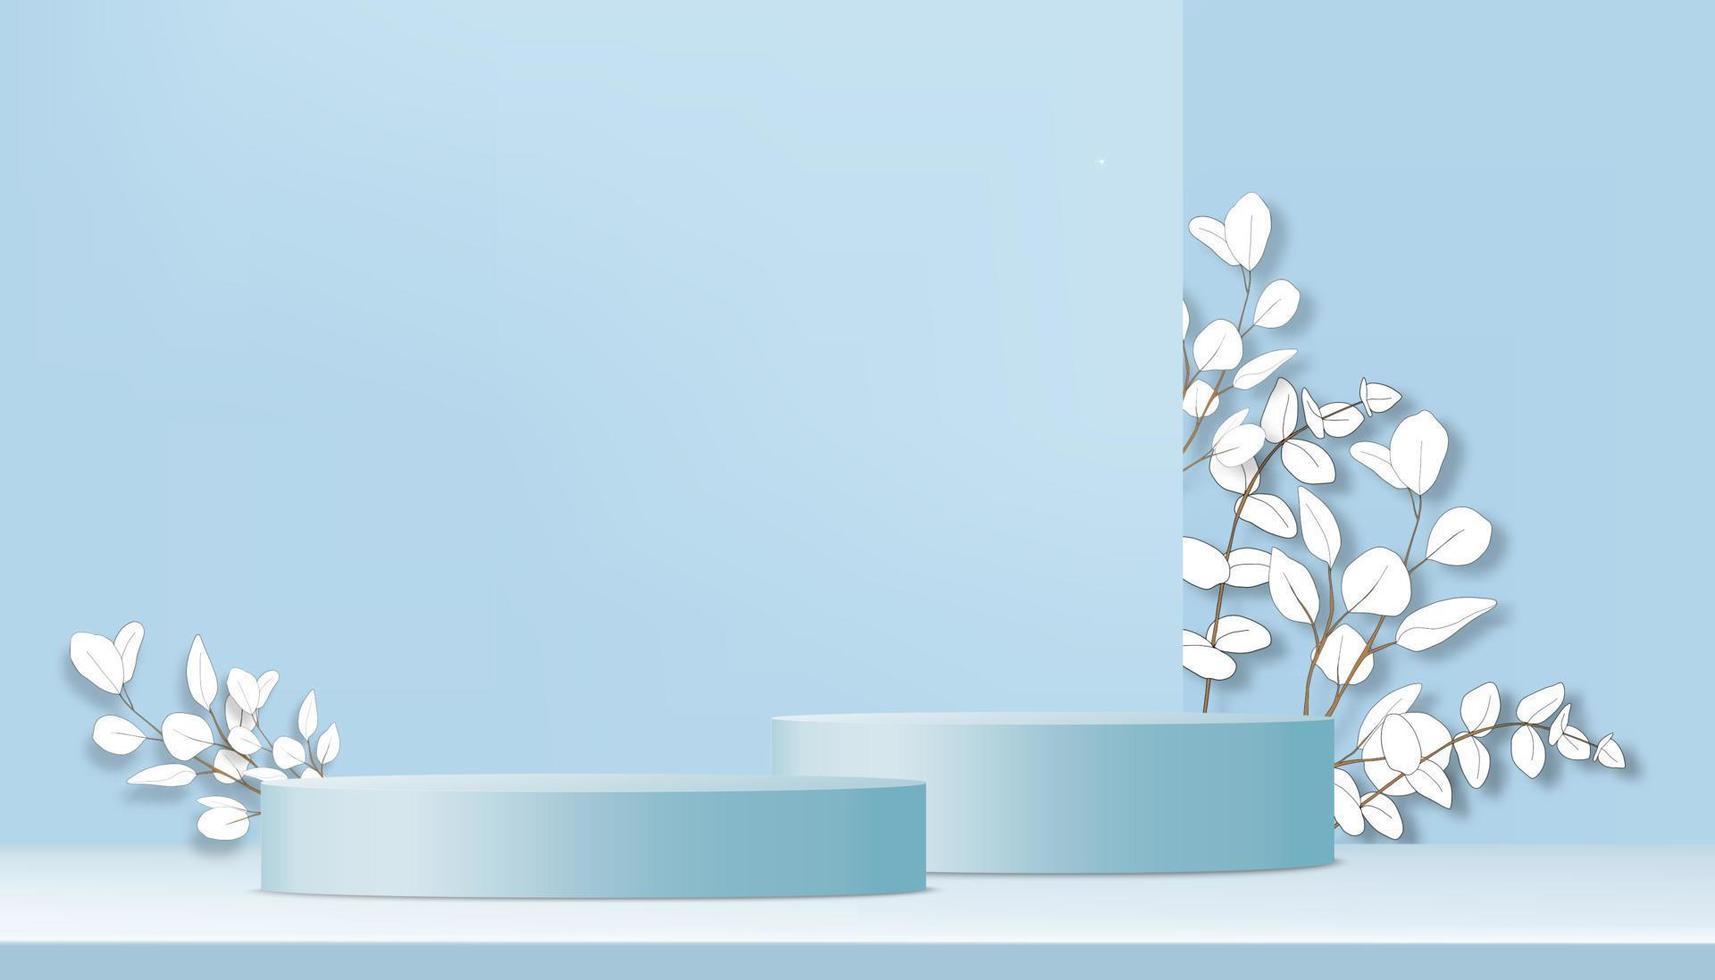 studio kamer met 3d cilinder podium, papier gesneden eucalyptus bladeren op blauwe muur achtergrond, vector illustratie achtergrond banner voor productpresentatie, promotie, mockup op lente of zomer verkoop